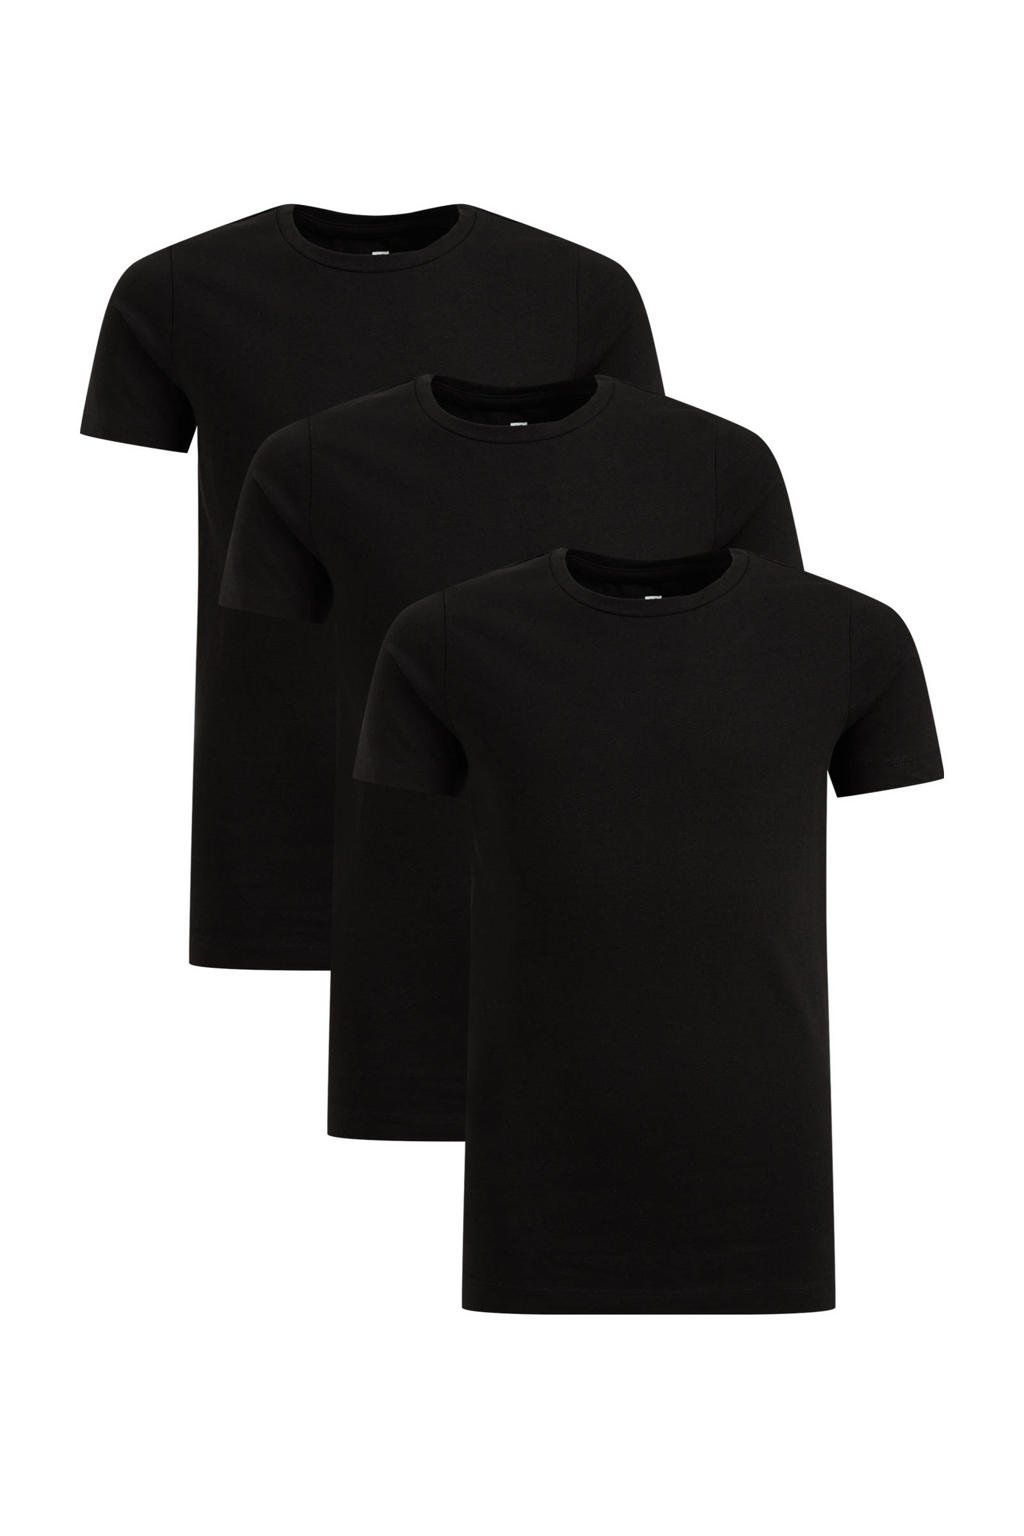 WE Fashion T-shirt - set van 3 zwart